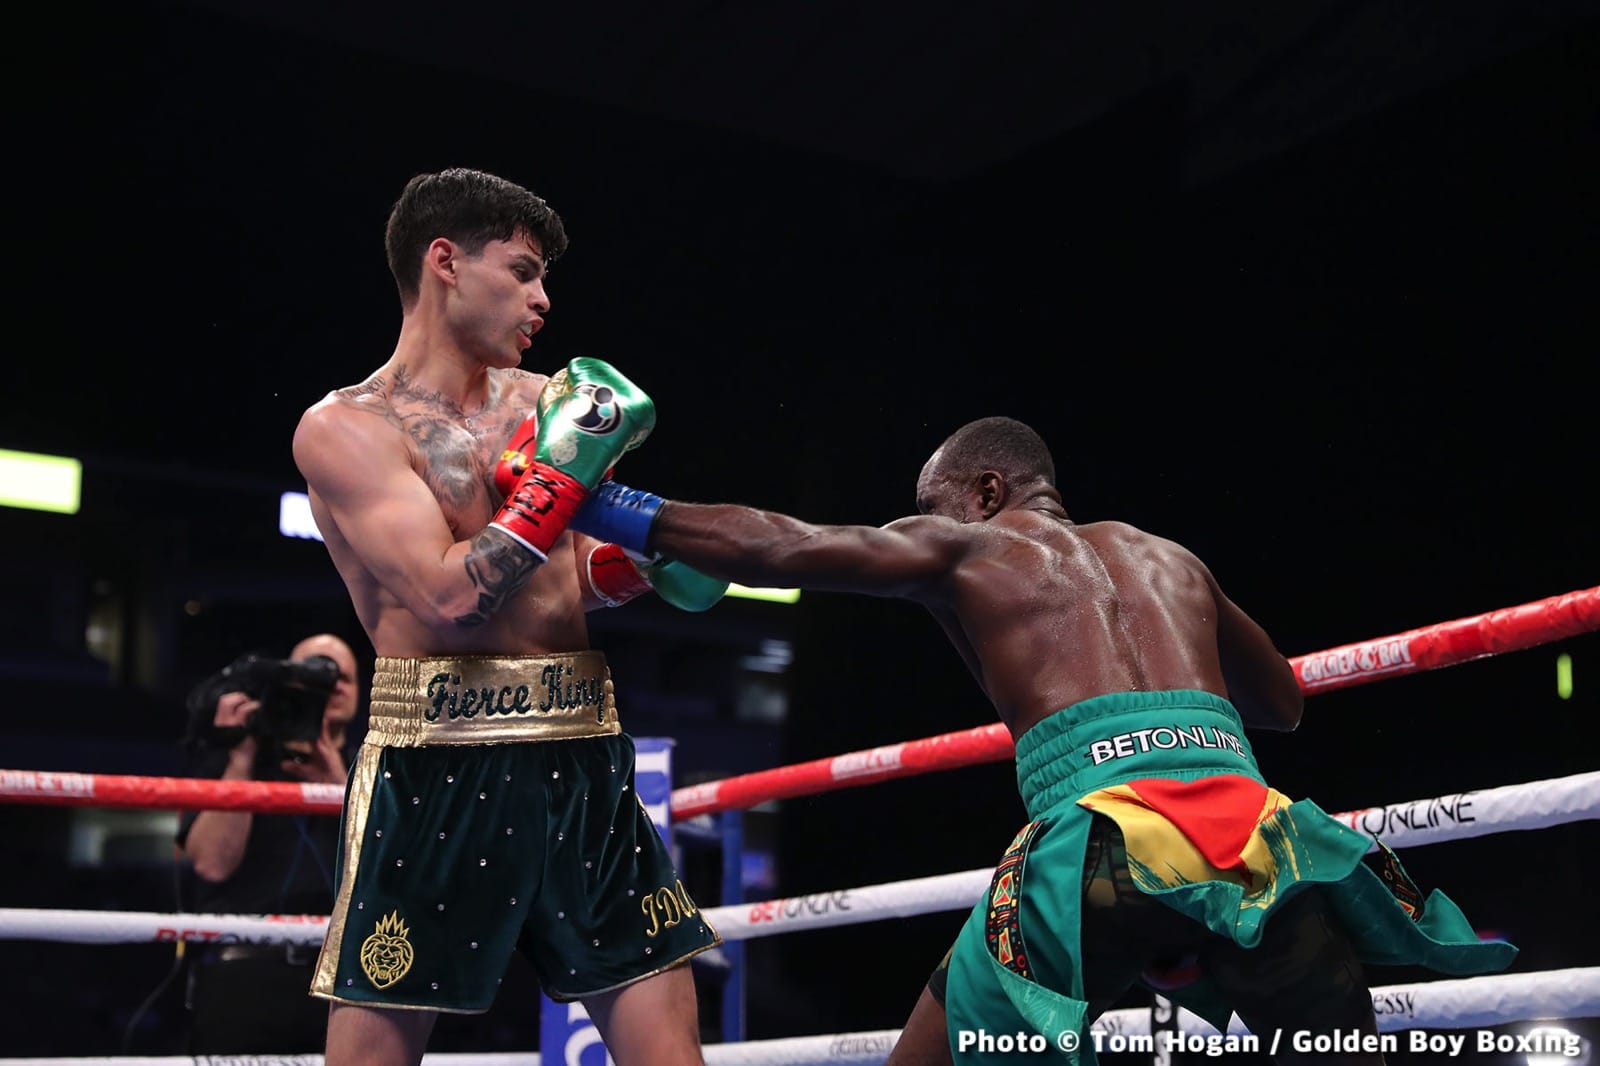 Ryan Garcia boxing image / photo